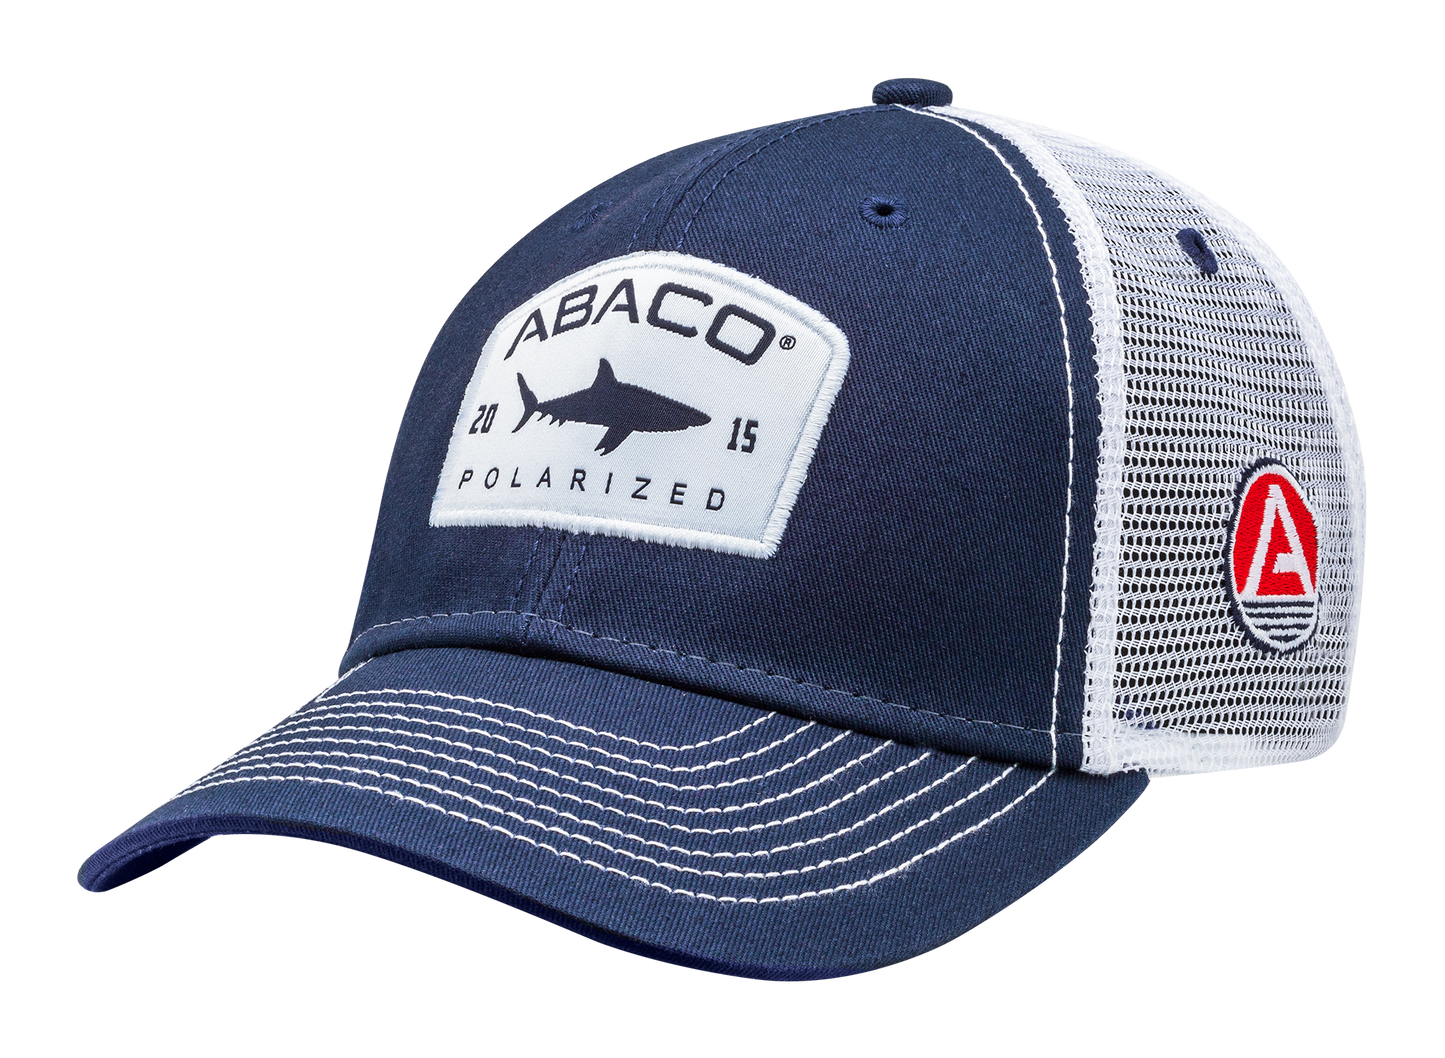 Abaco Polarized Shark Sideline Hat